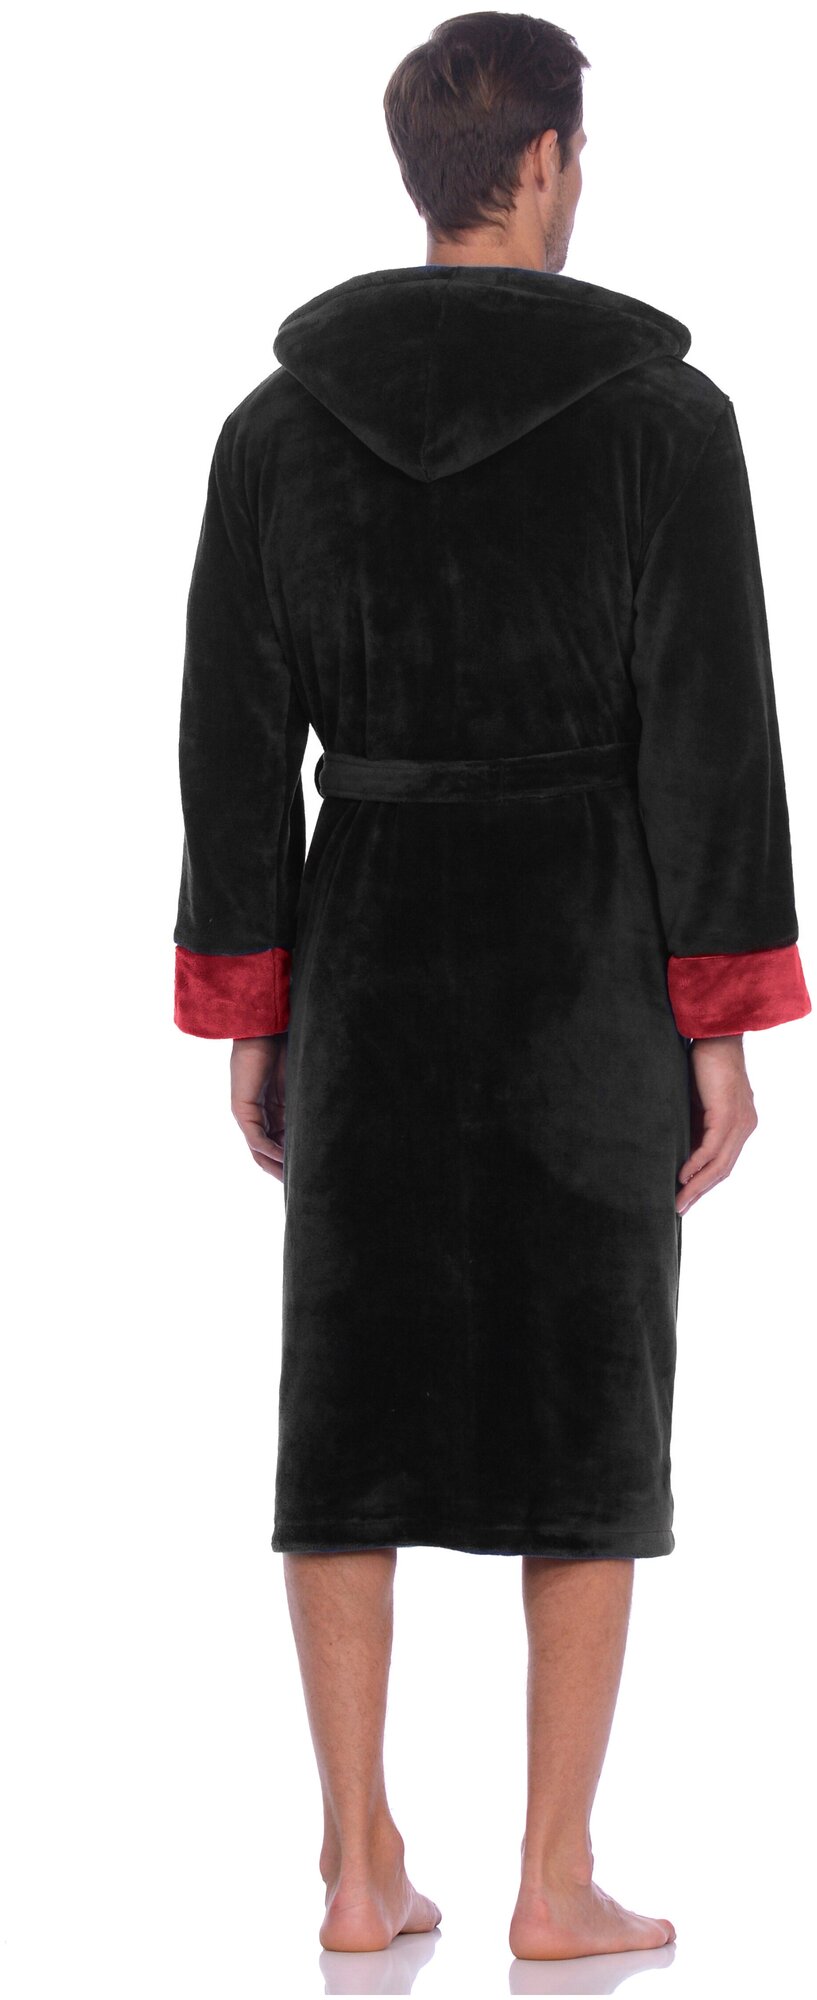 Халат мужской домашний банный, длинный на запах с поясом, вышивкой, капюшоном для бани, душа S-family цвет черно-красный размер 50/52 - фотография № 2